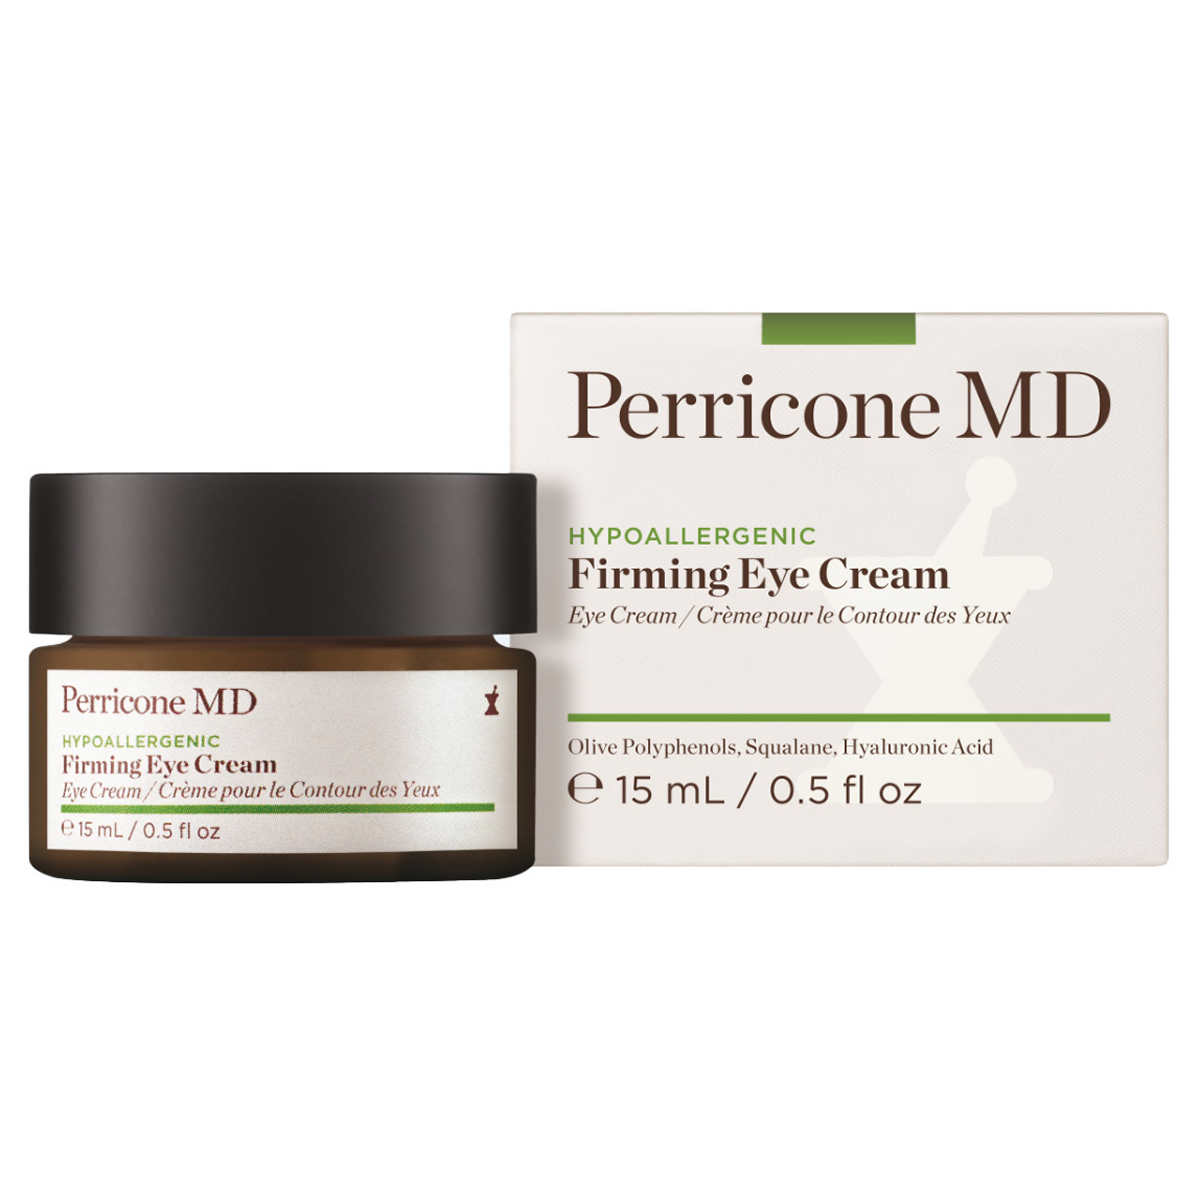 Perricone MD Hypoallergenic Firming Eye Cream, 0.5 fl oz